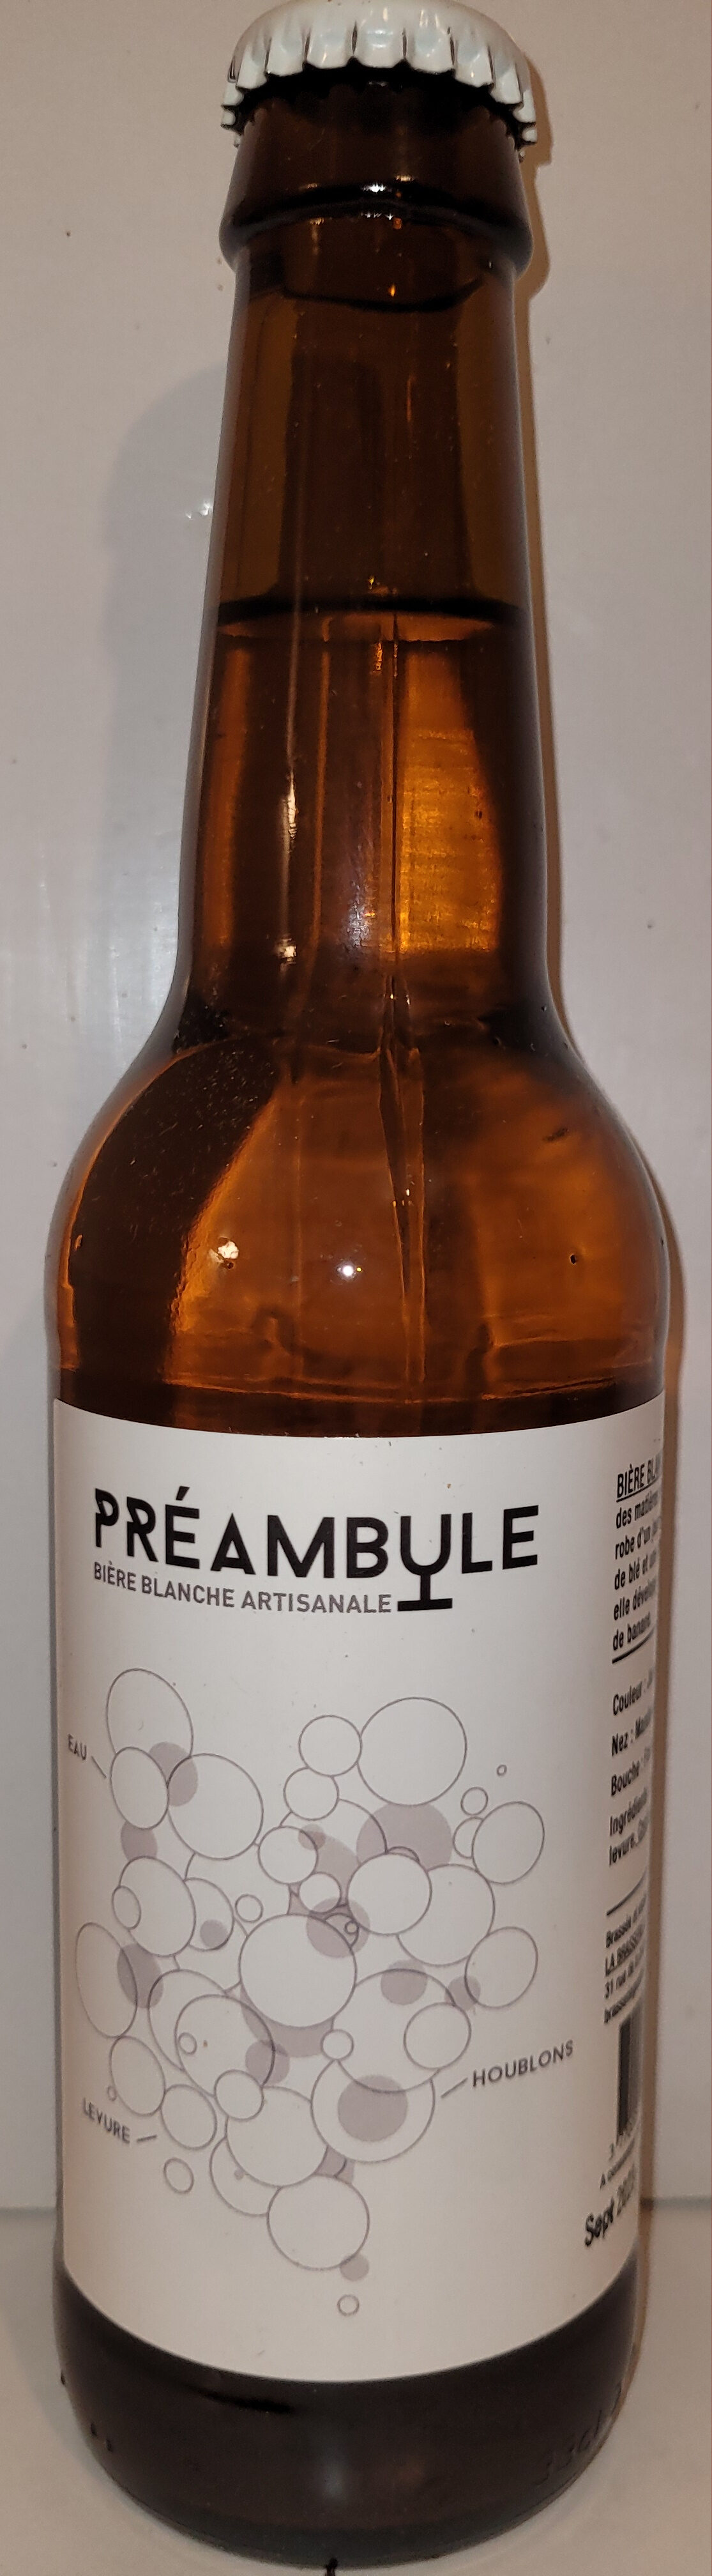 Préambule - Product - fr